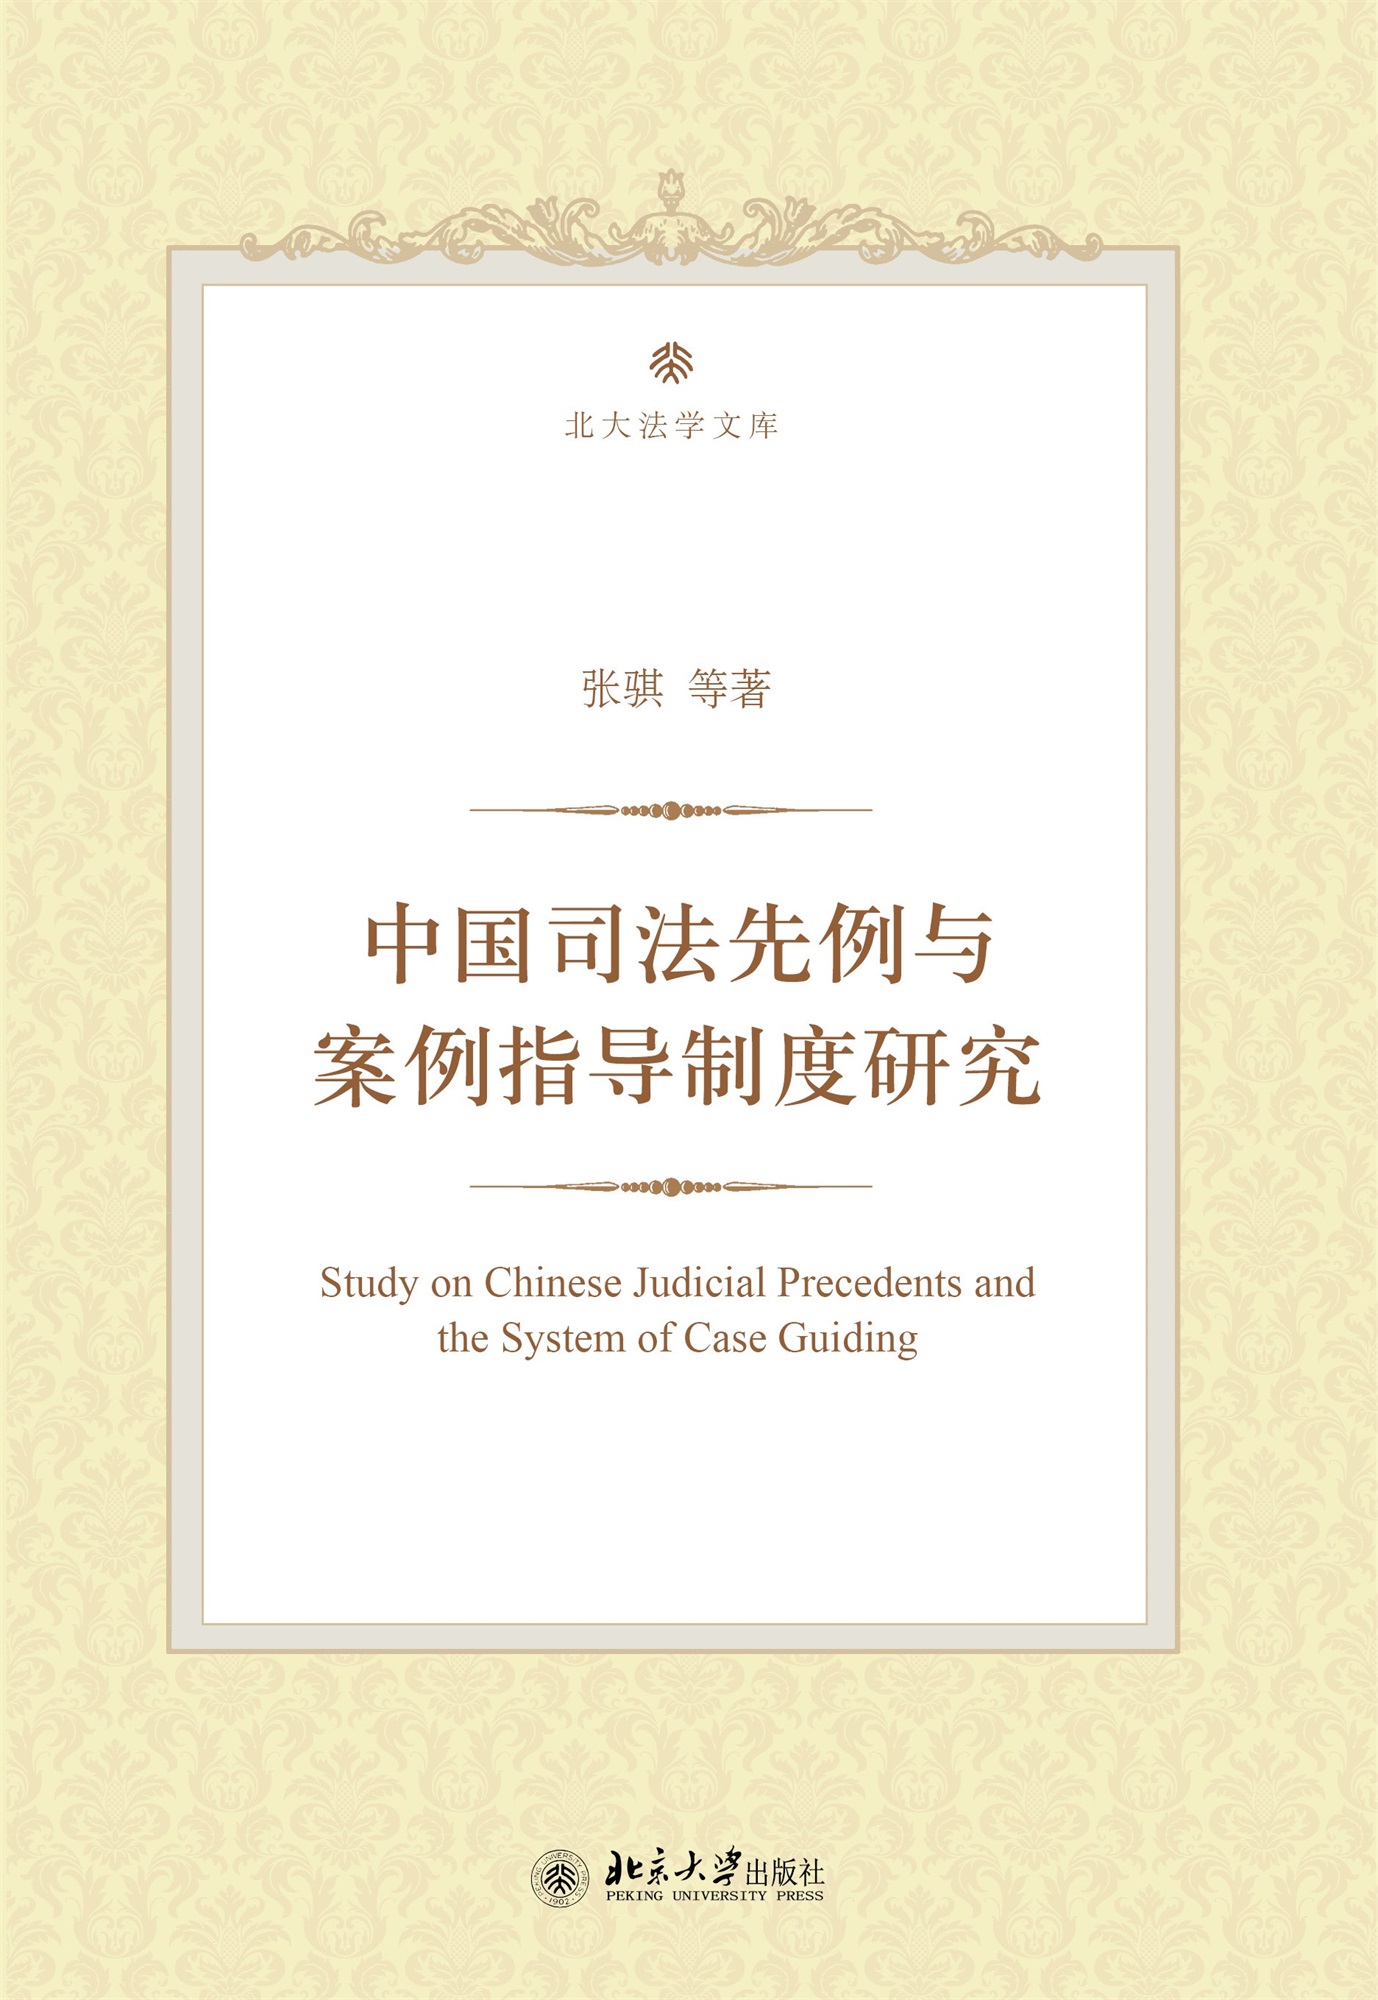 中國司法先例與案例指導制度研究